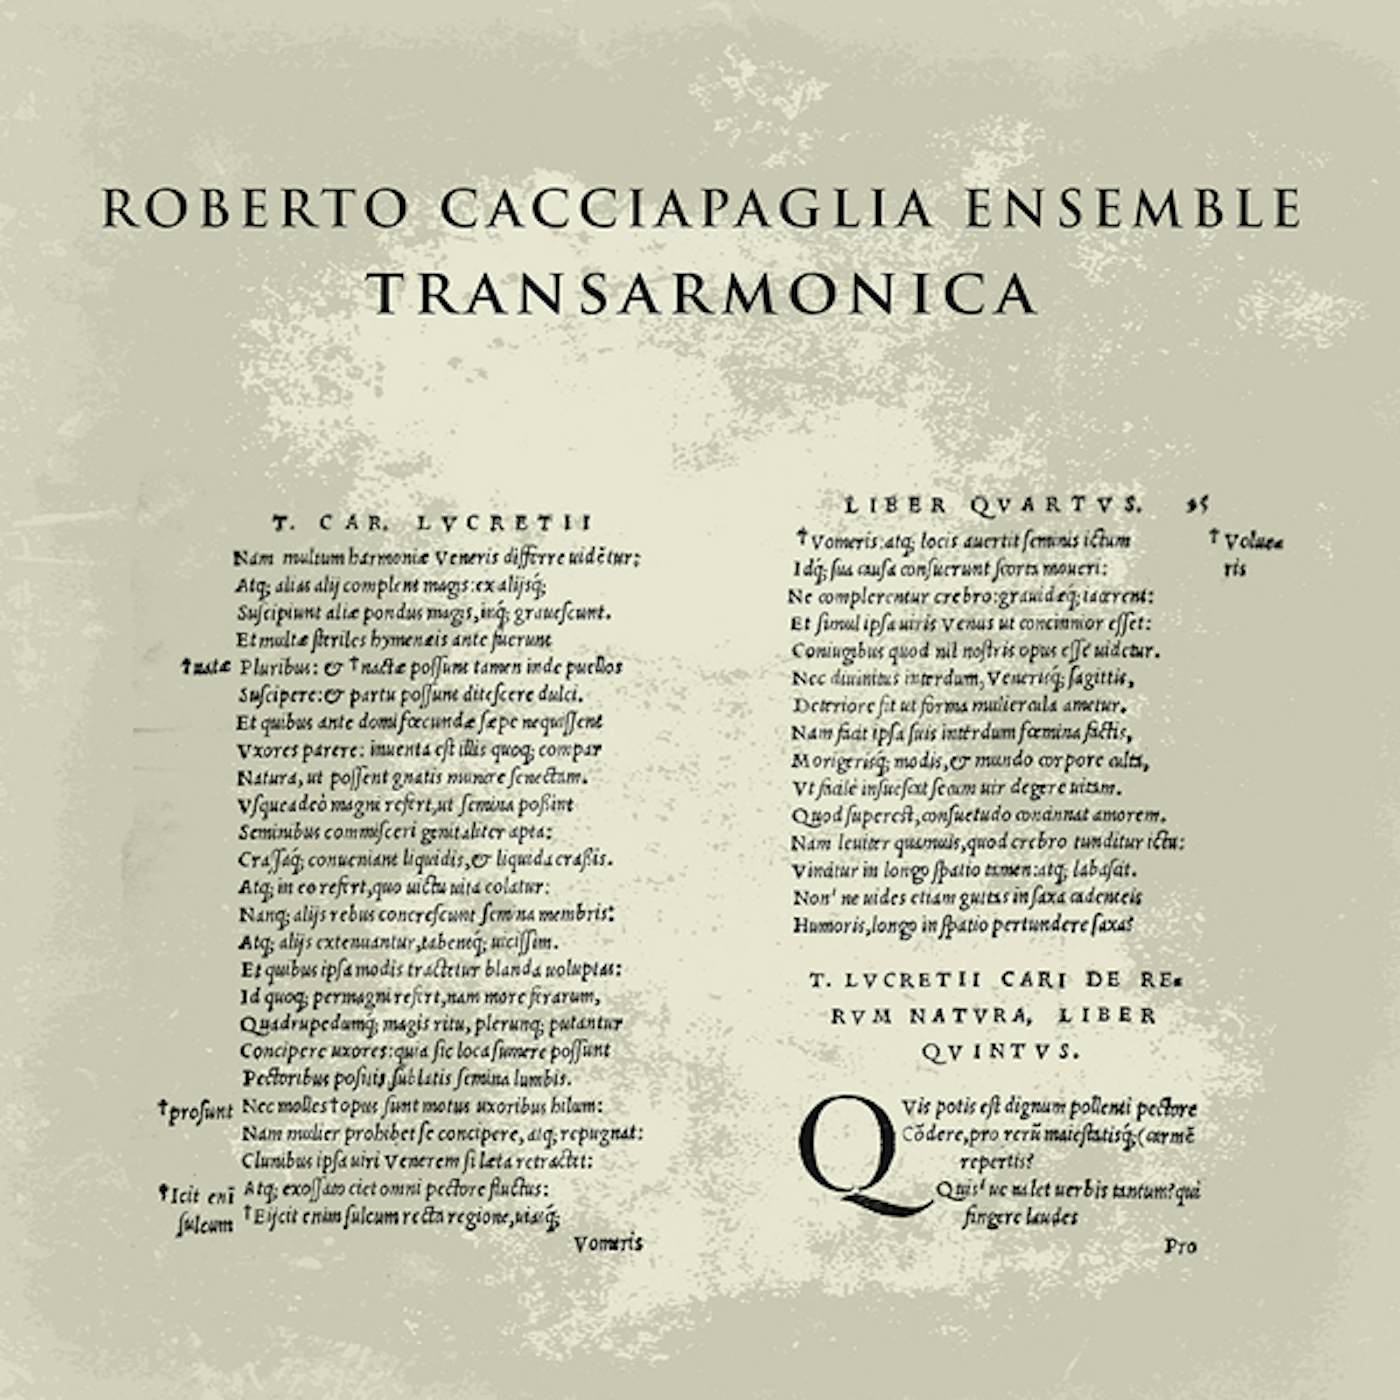 Roberto Cacciapaglia Transarmonica Vinyl Record